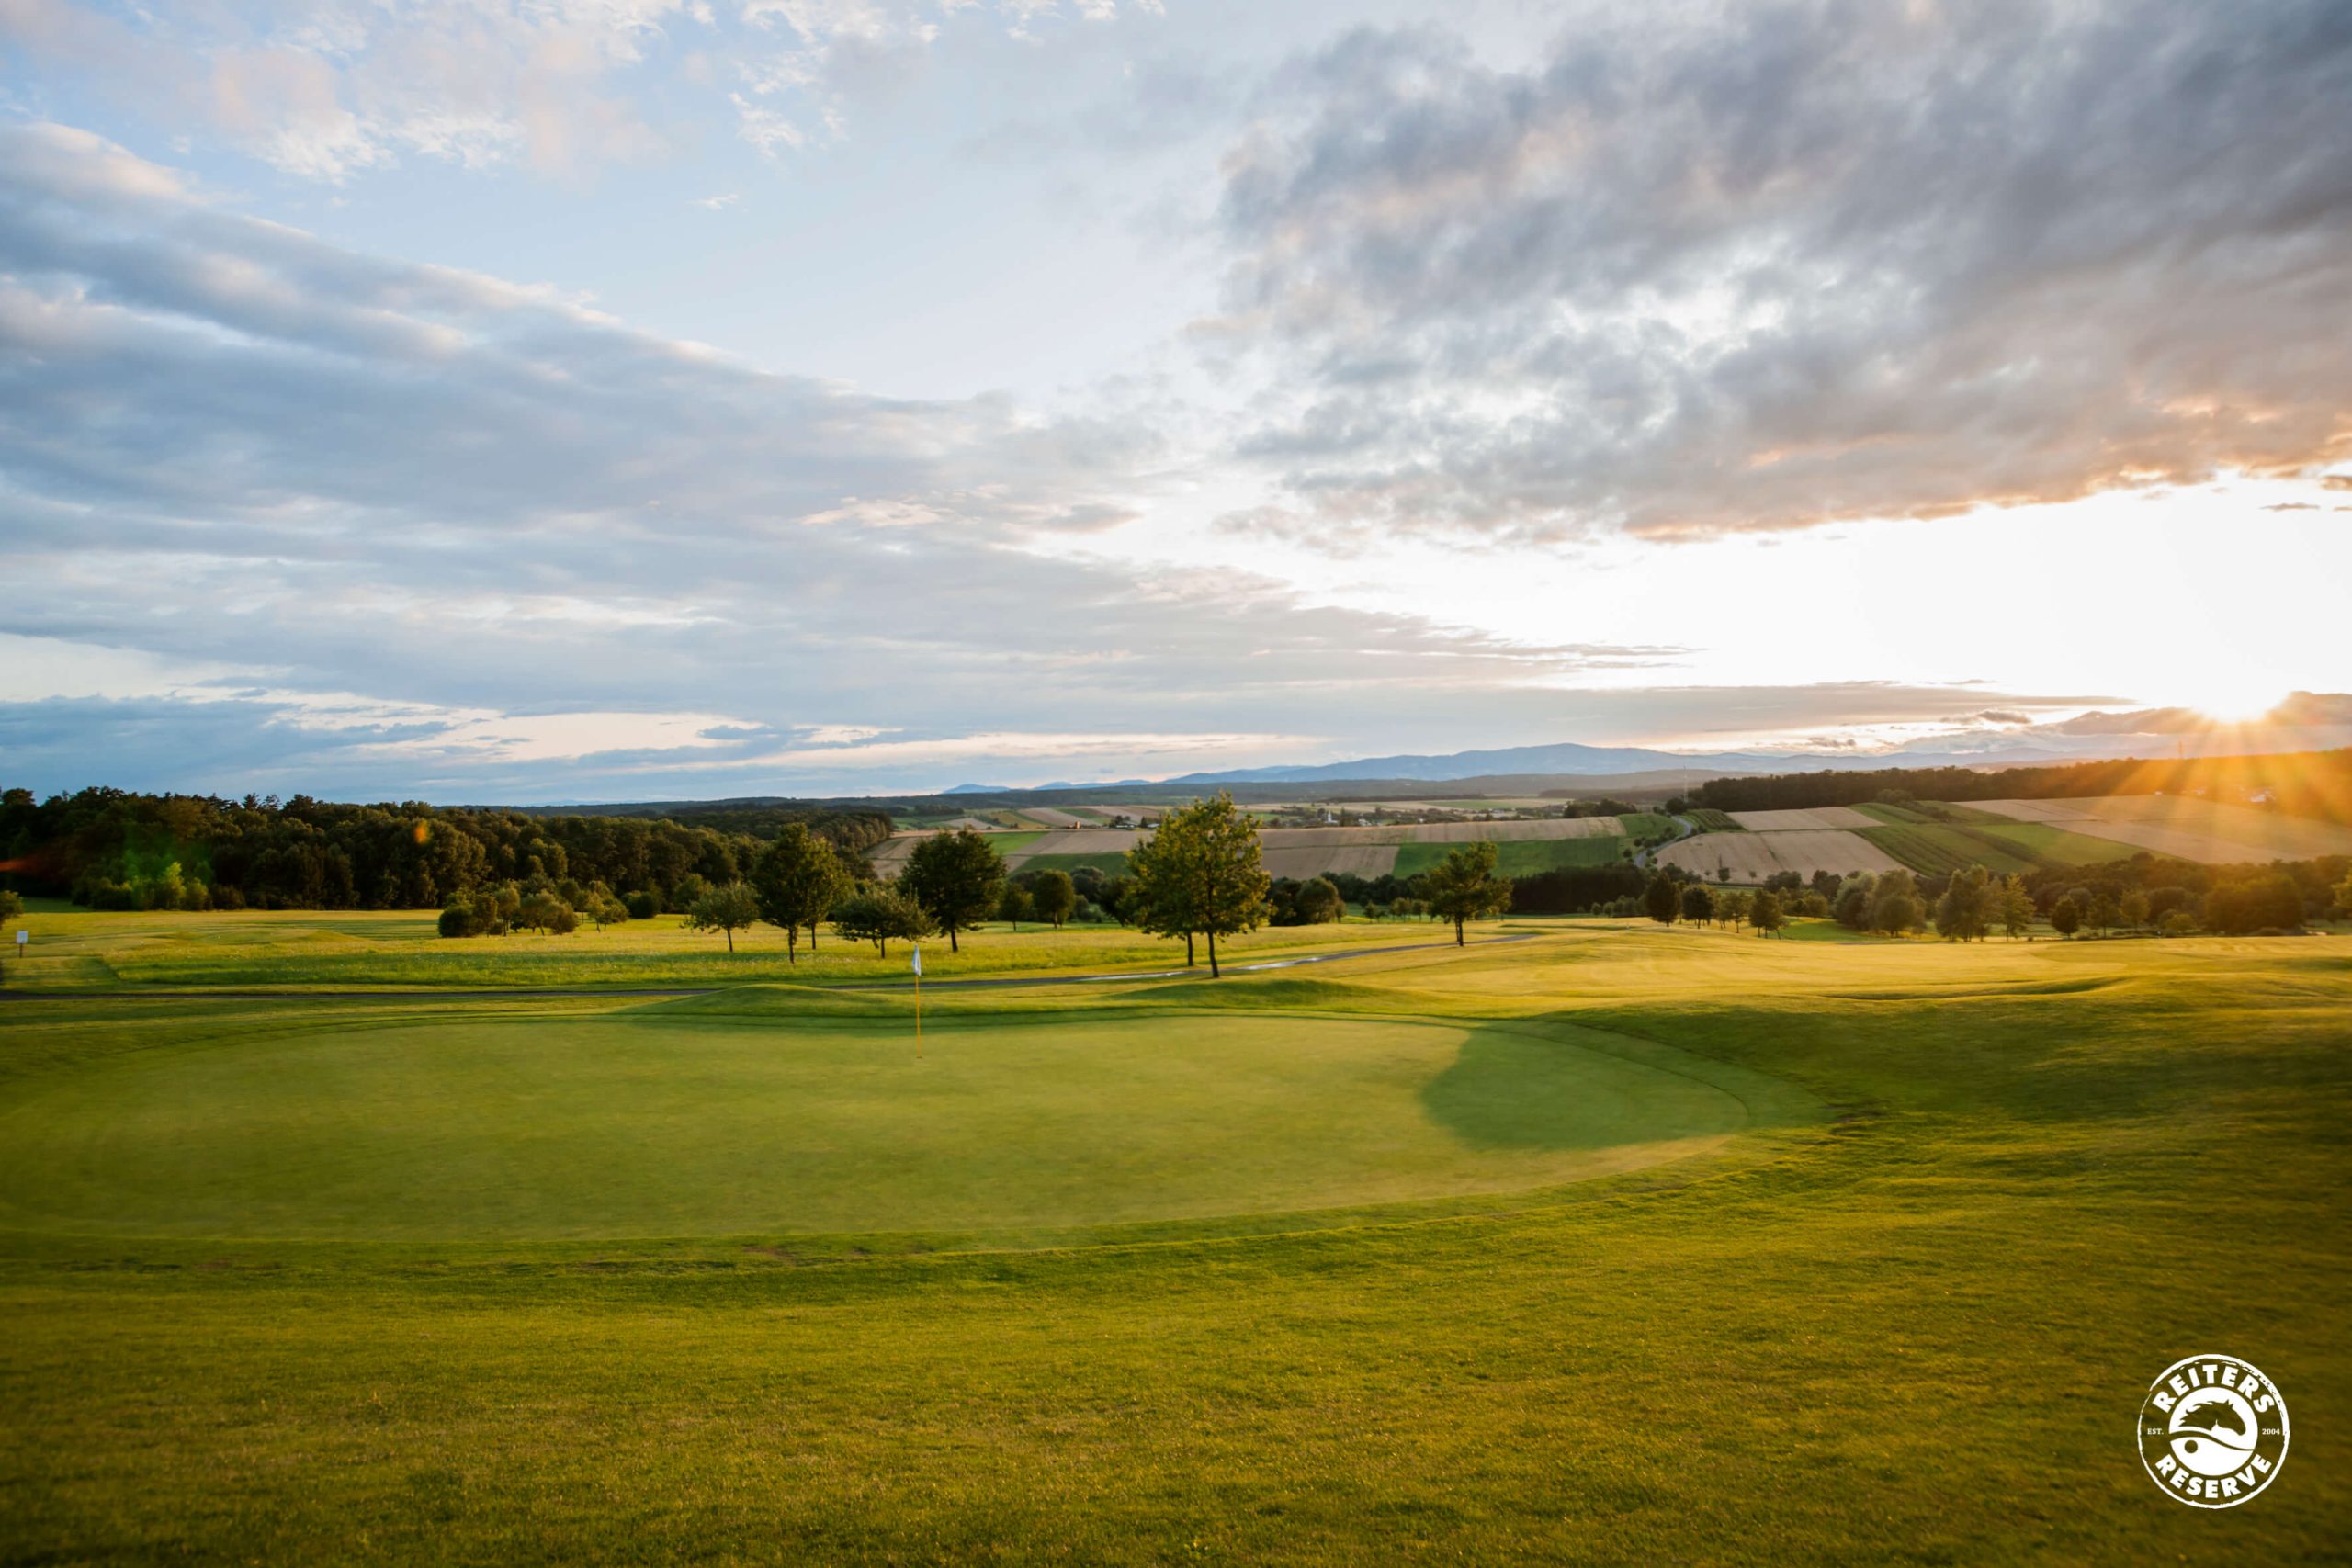 Ein weitläufiger Golfplatz bei Sonnenuntergang, der eine friedliche Atmosphäre ausstrahlt.